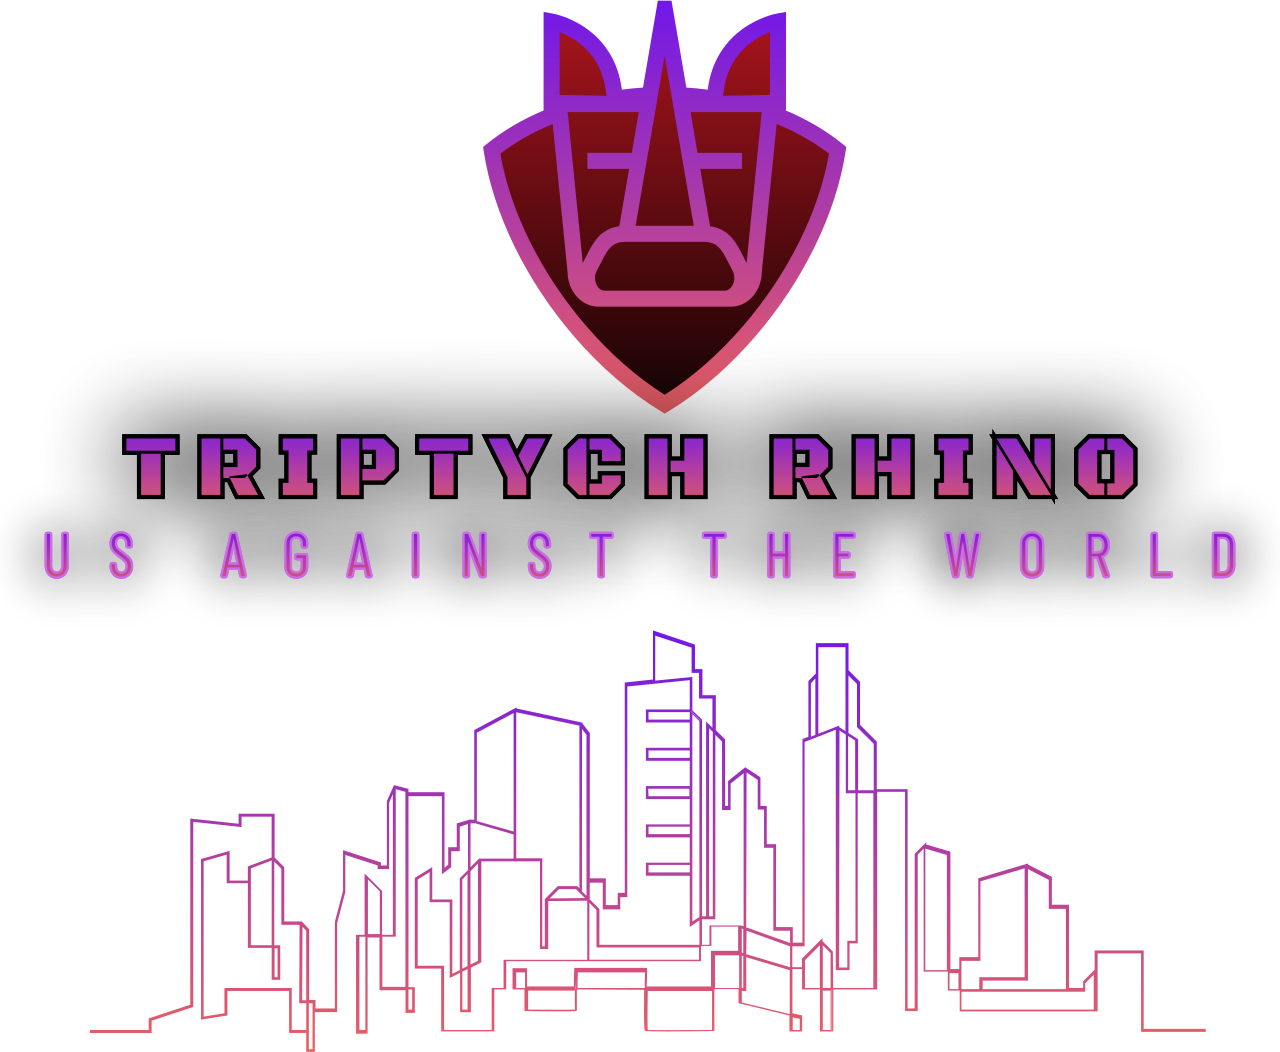 Triptych Rhino's logo